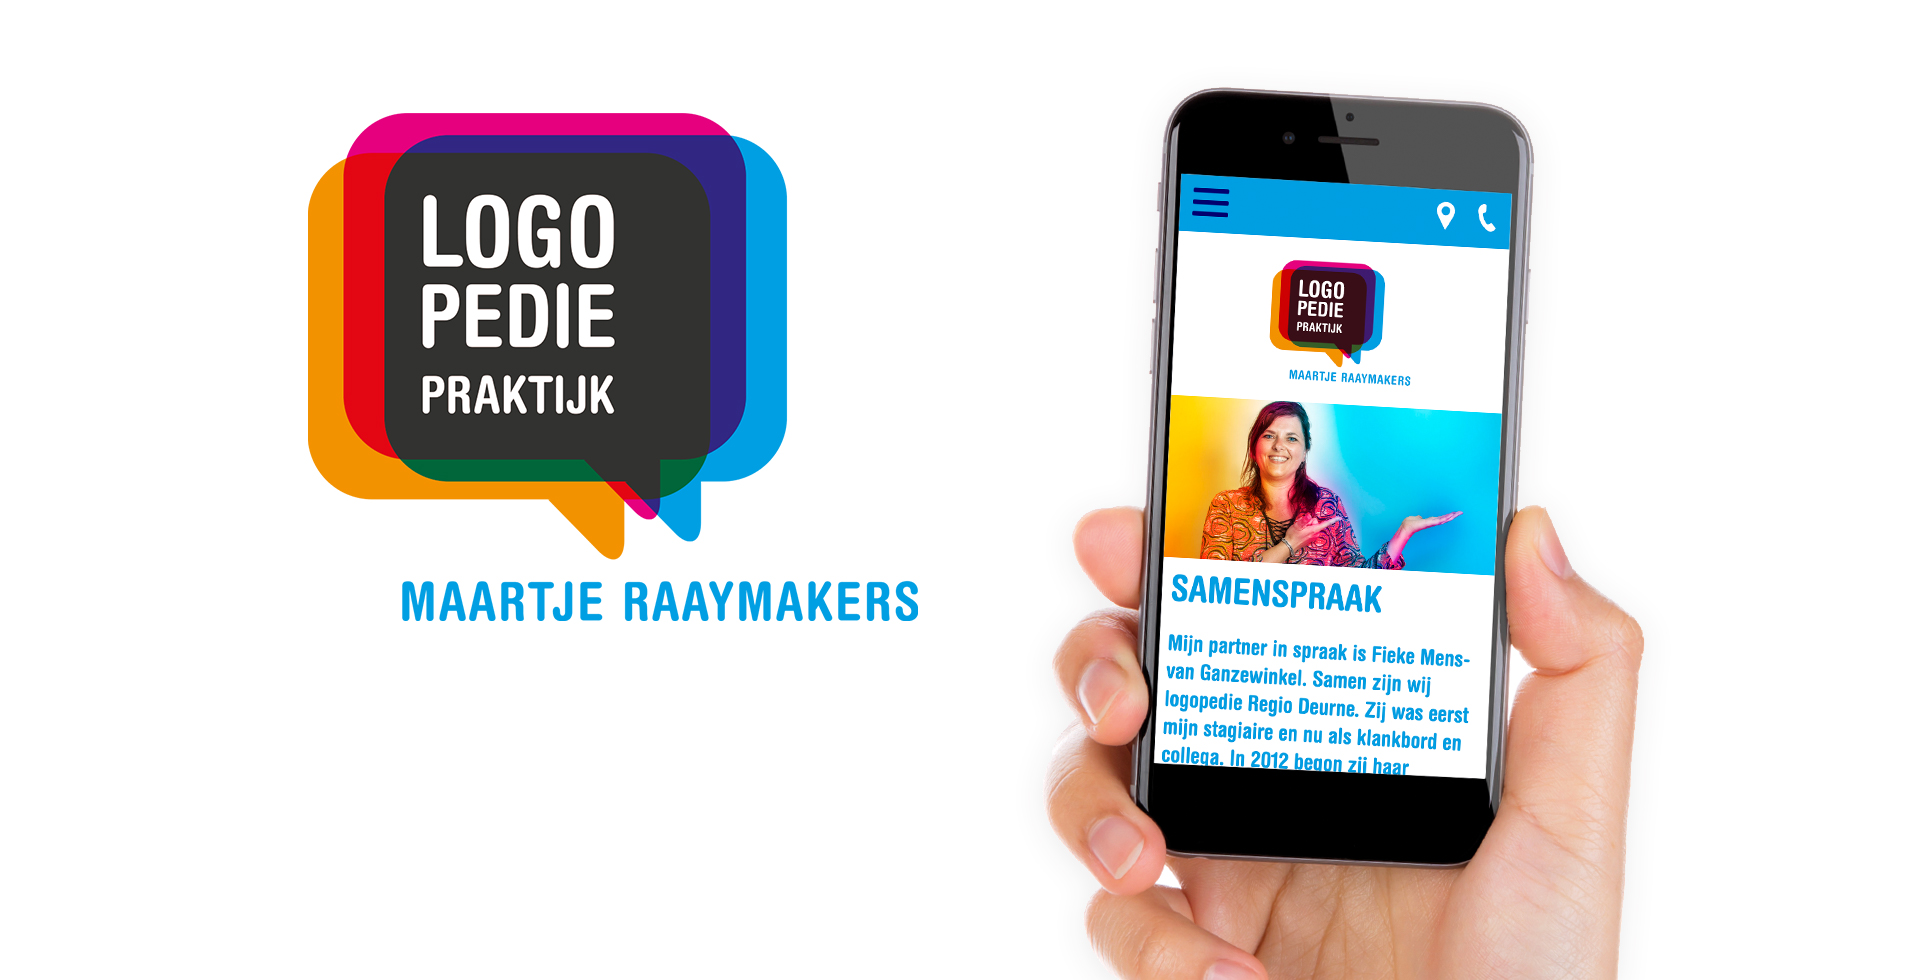 Spiegel crossmedia communicatie - Maartje Raaymakers - Logopediepraktijk